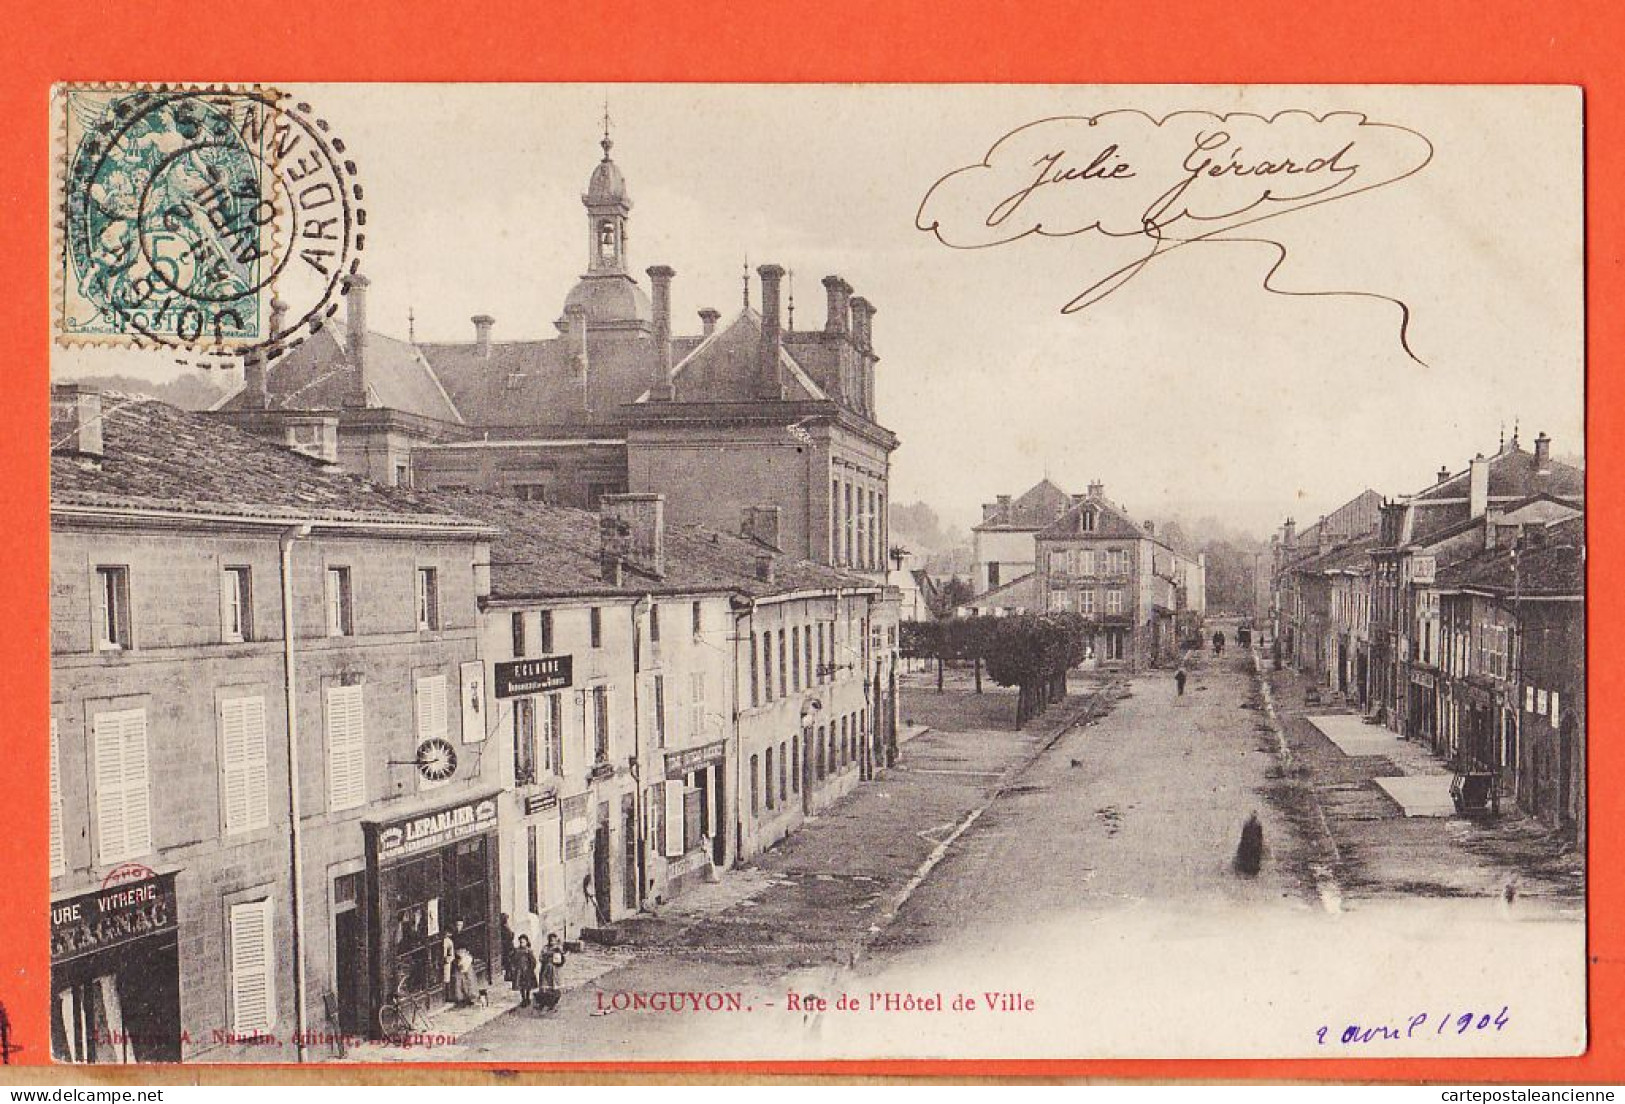 30937 / LONGUYON (54) Rue Hotel Ville 1904 Julie GERARD à Marcel Henon JACQUEMART Joigny-s-Meuse Edit Librairie NAUDIn - Longuyon